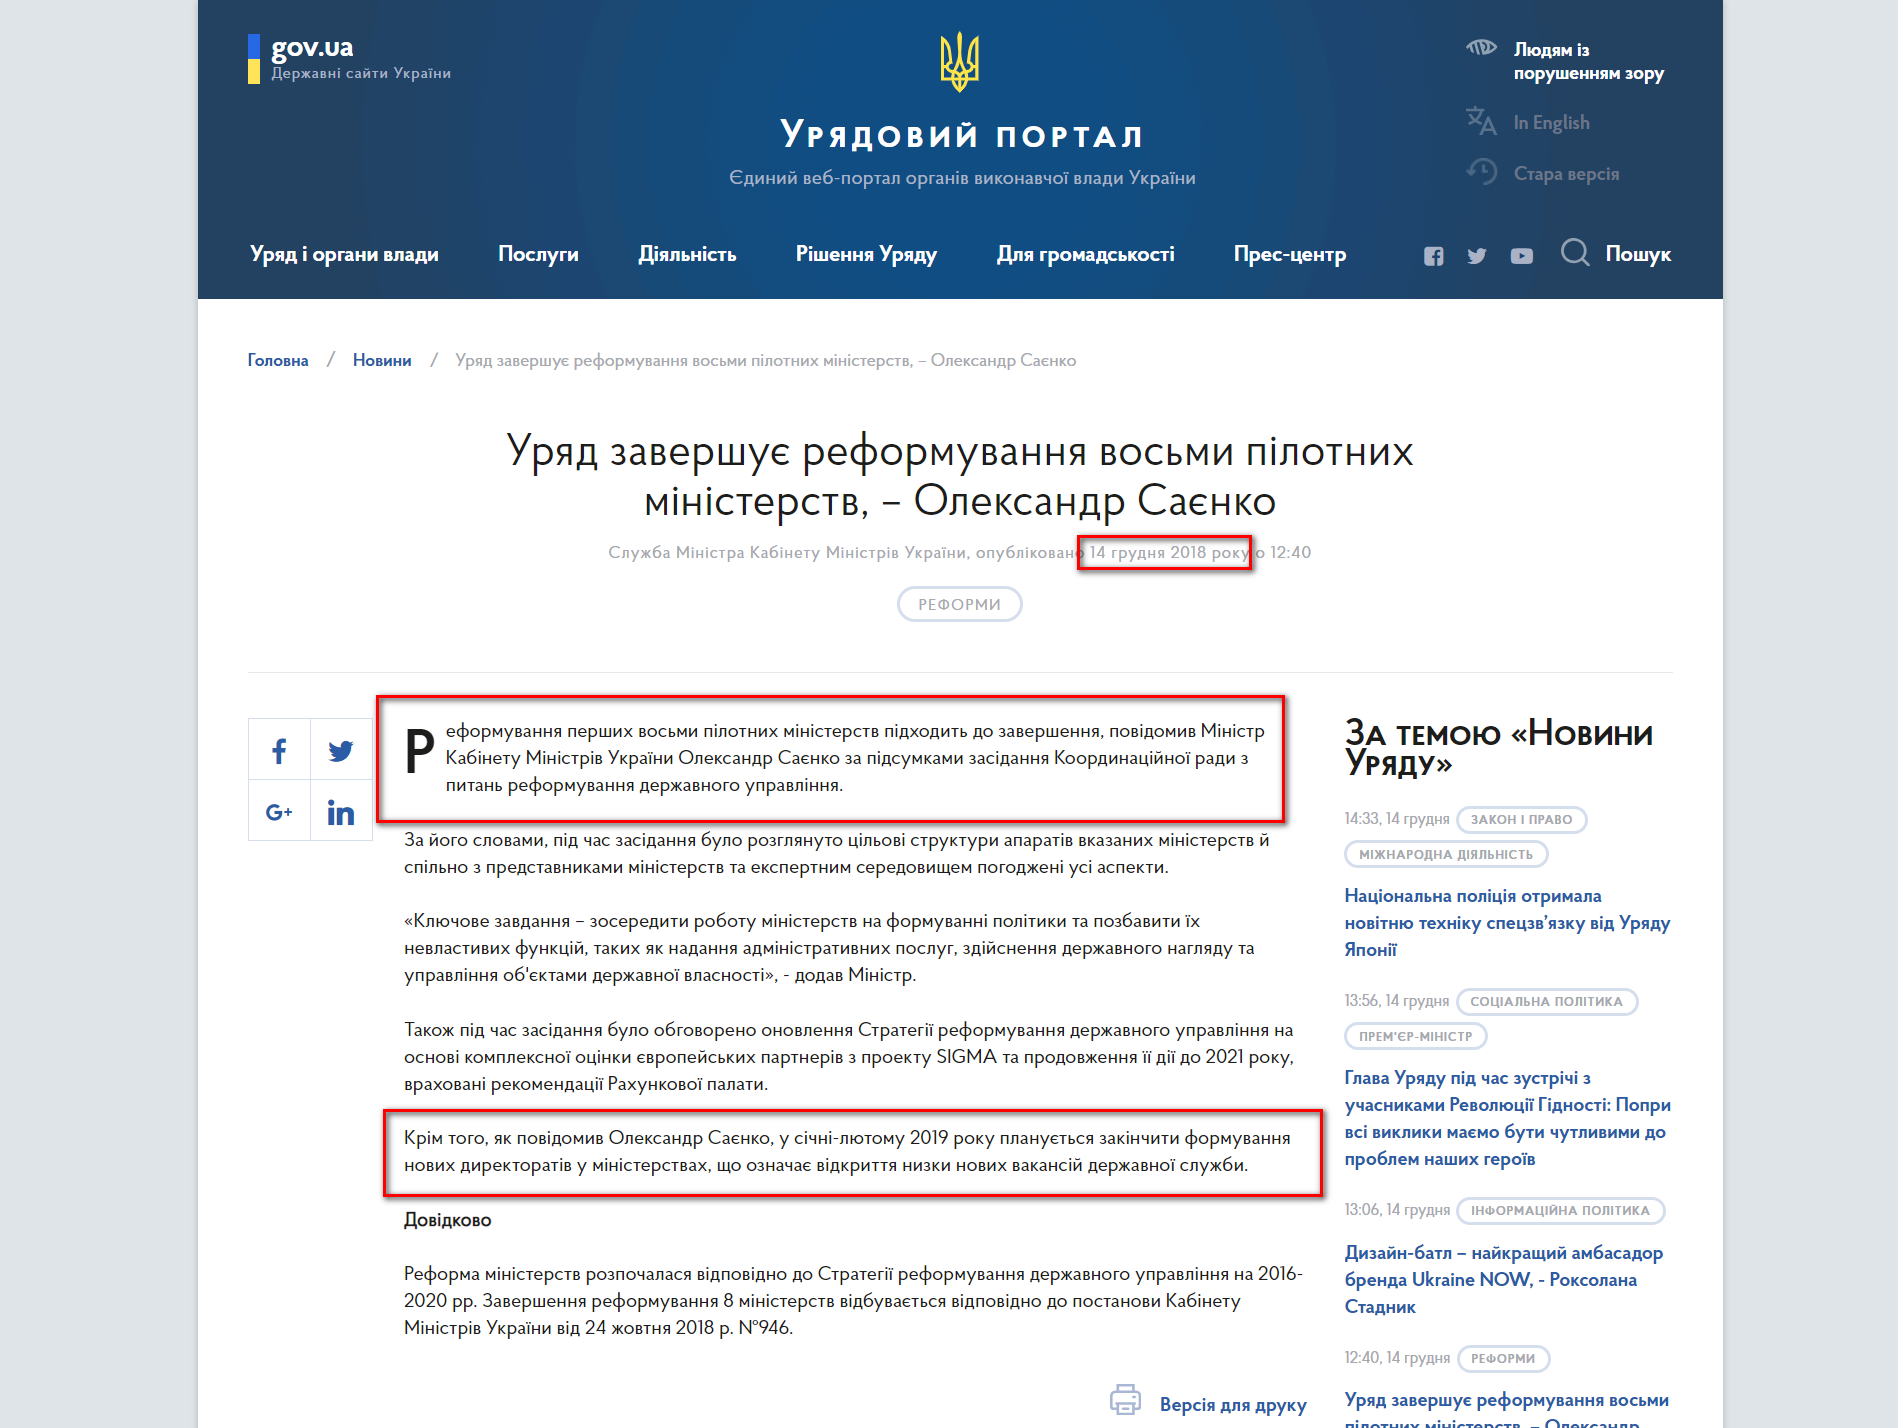 https://www.kmu.gov.ua/ua/news/uryad-zavershuye-reformuvannya-vosmi-pilotnih-ministerstv-oleksandr-sayenko